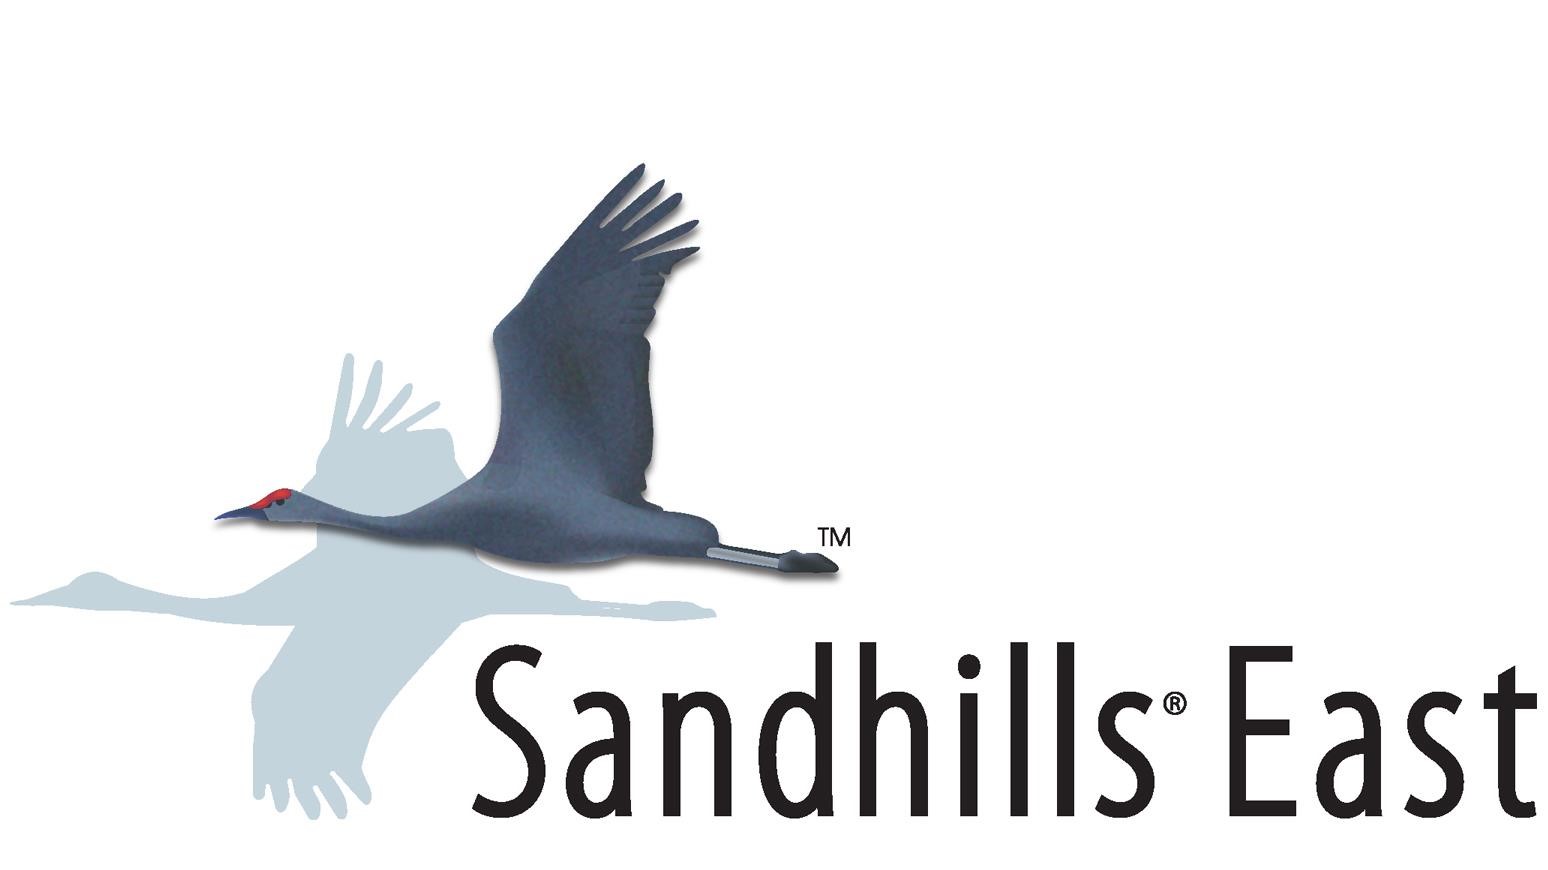 Sandhills East Acquires Web Management Consultants Ltd.